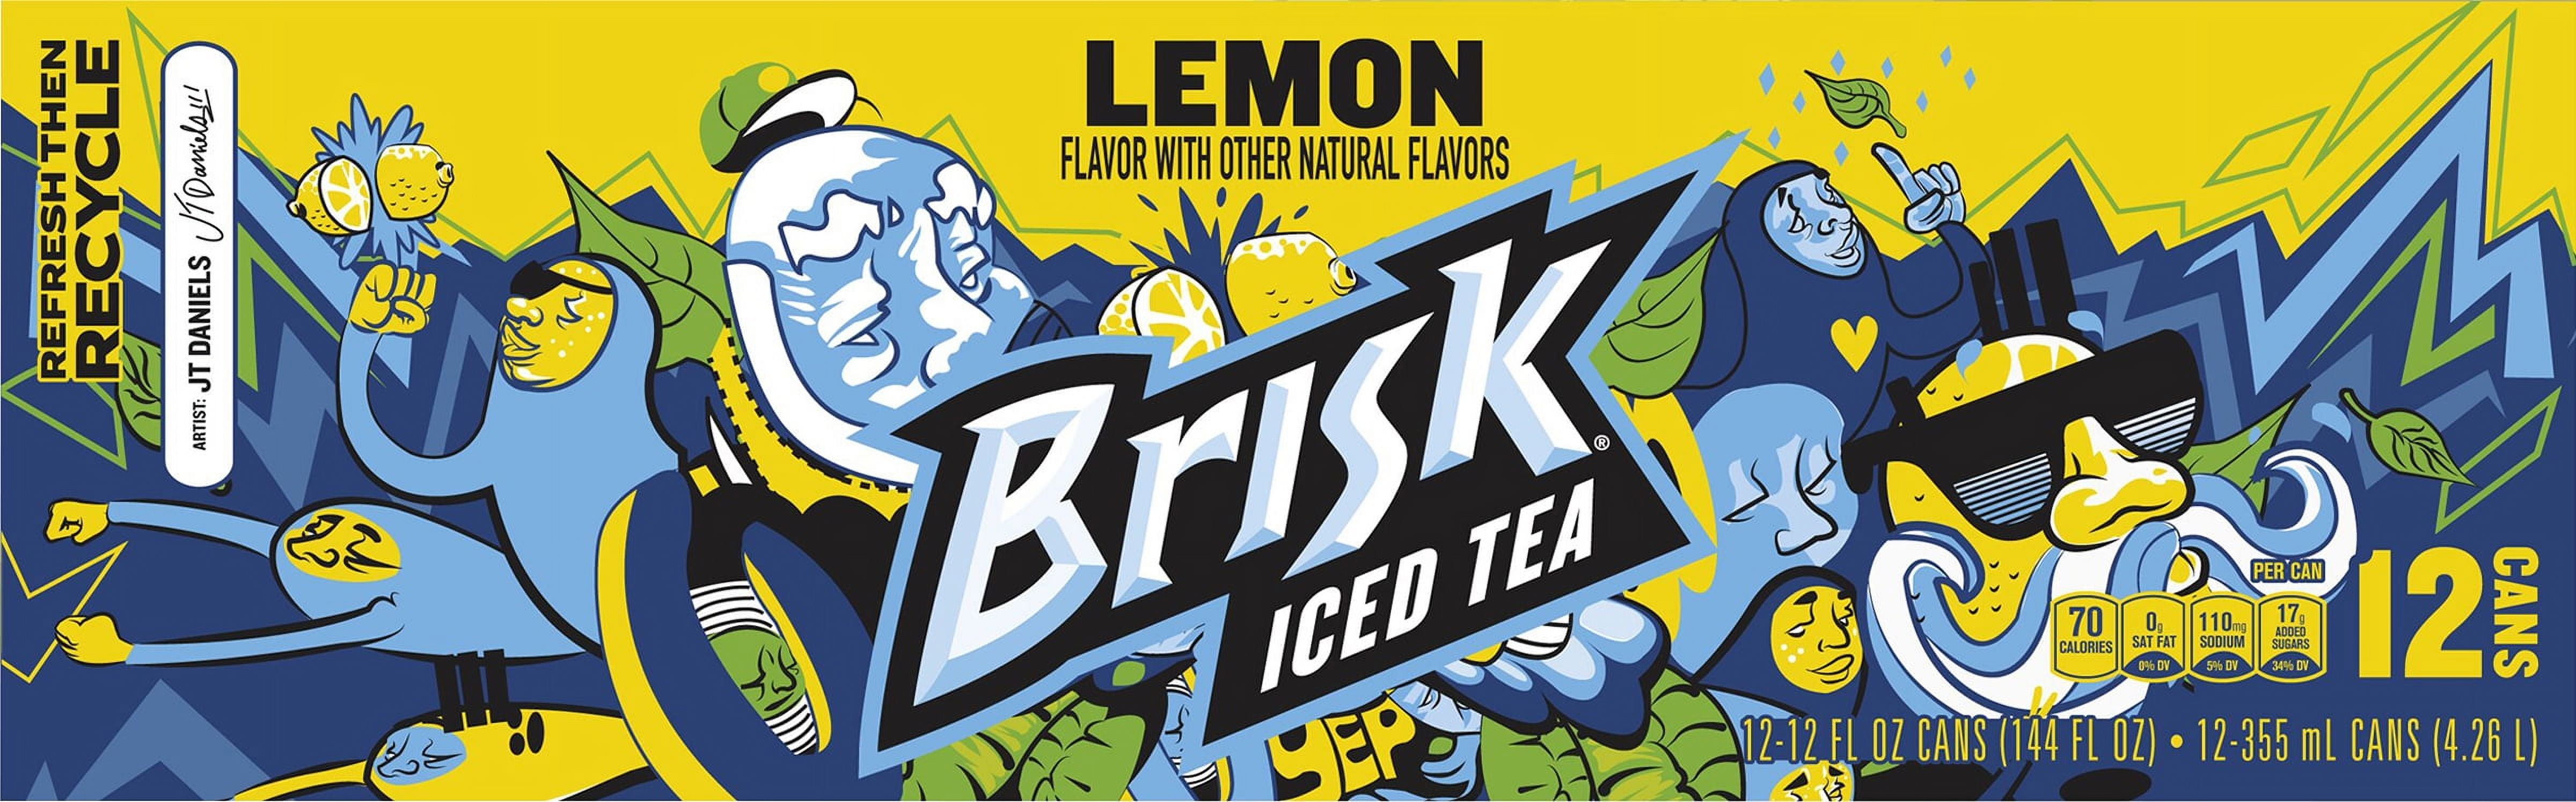 Brisk Lemon Iced Tea 20 oz — Gong's Market